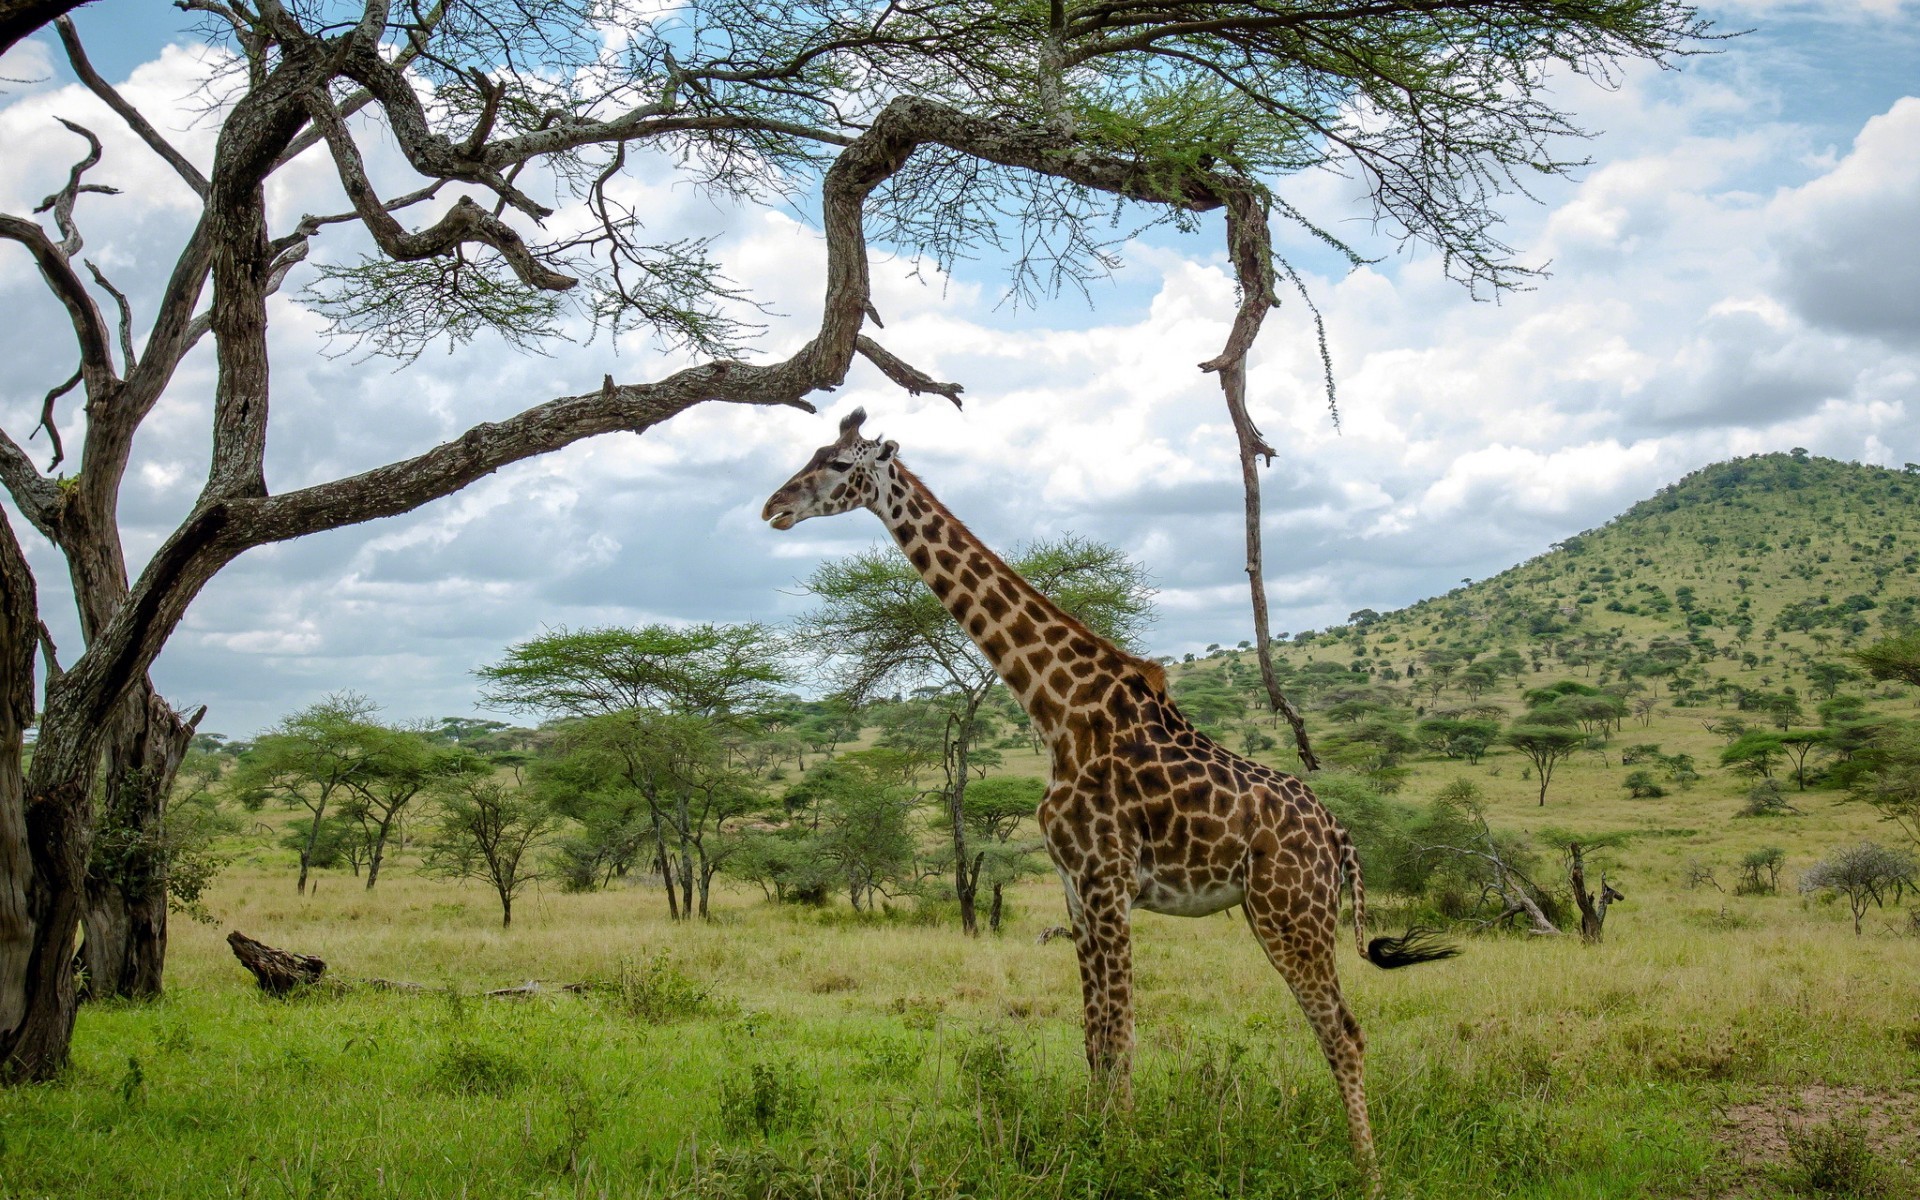 General 1920x1200 animals giraffes mammals wildlife savannah